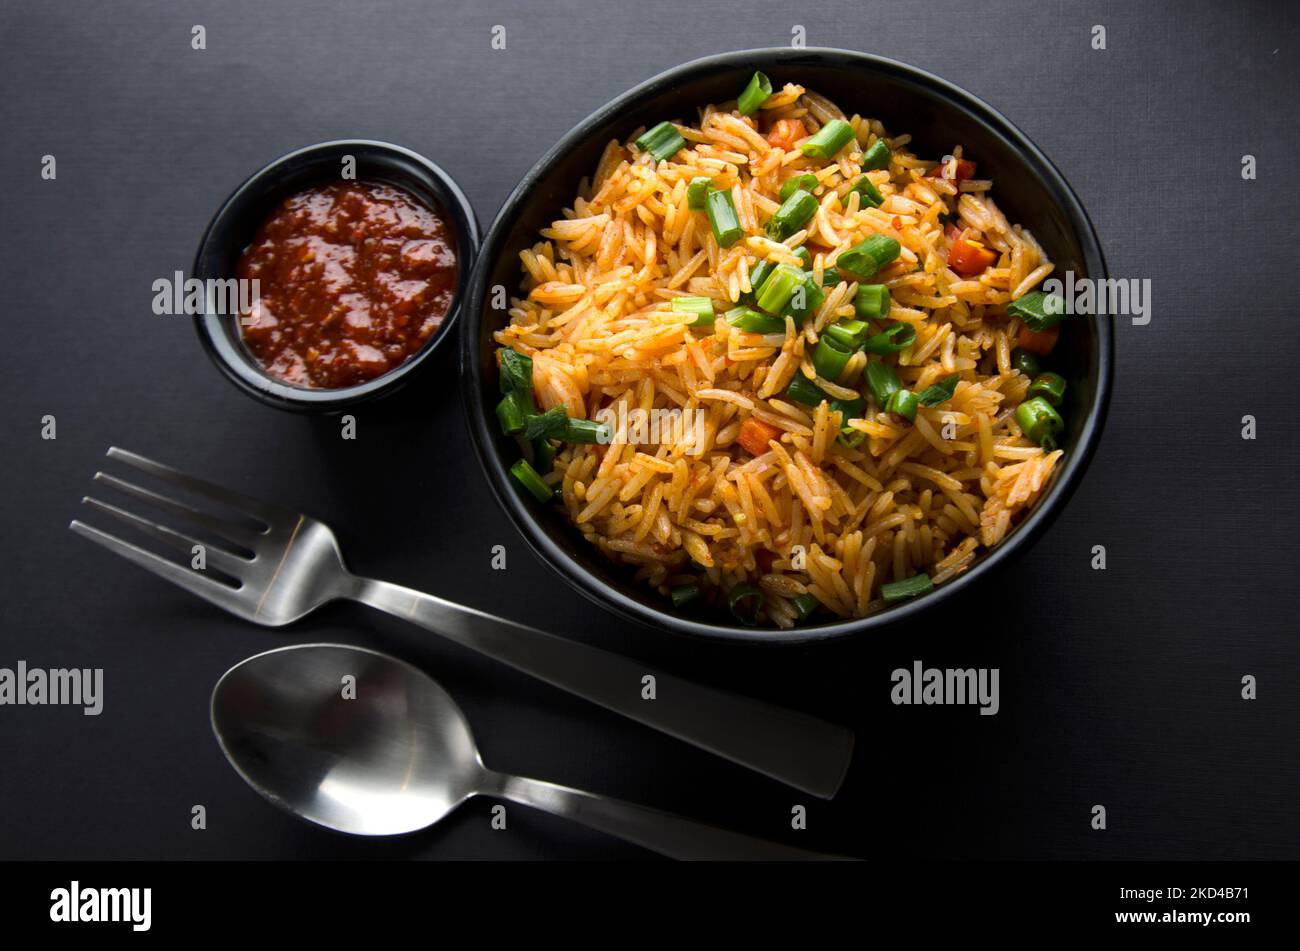 Nahaufnahme von chinesischen Garnelen Schezwan Nudeln, Gemüse Hakka Nudeln oder Chow mein ist ein beliebtes indo-chinesischen Rezepte. Stockfoto